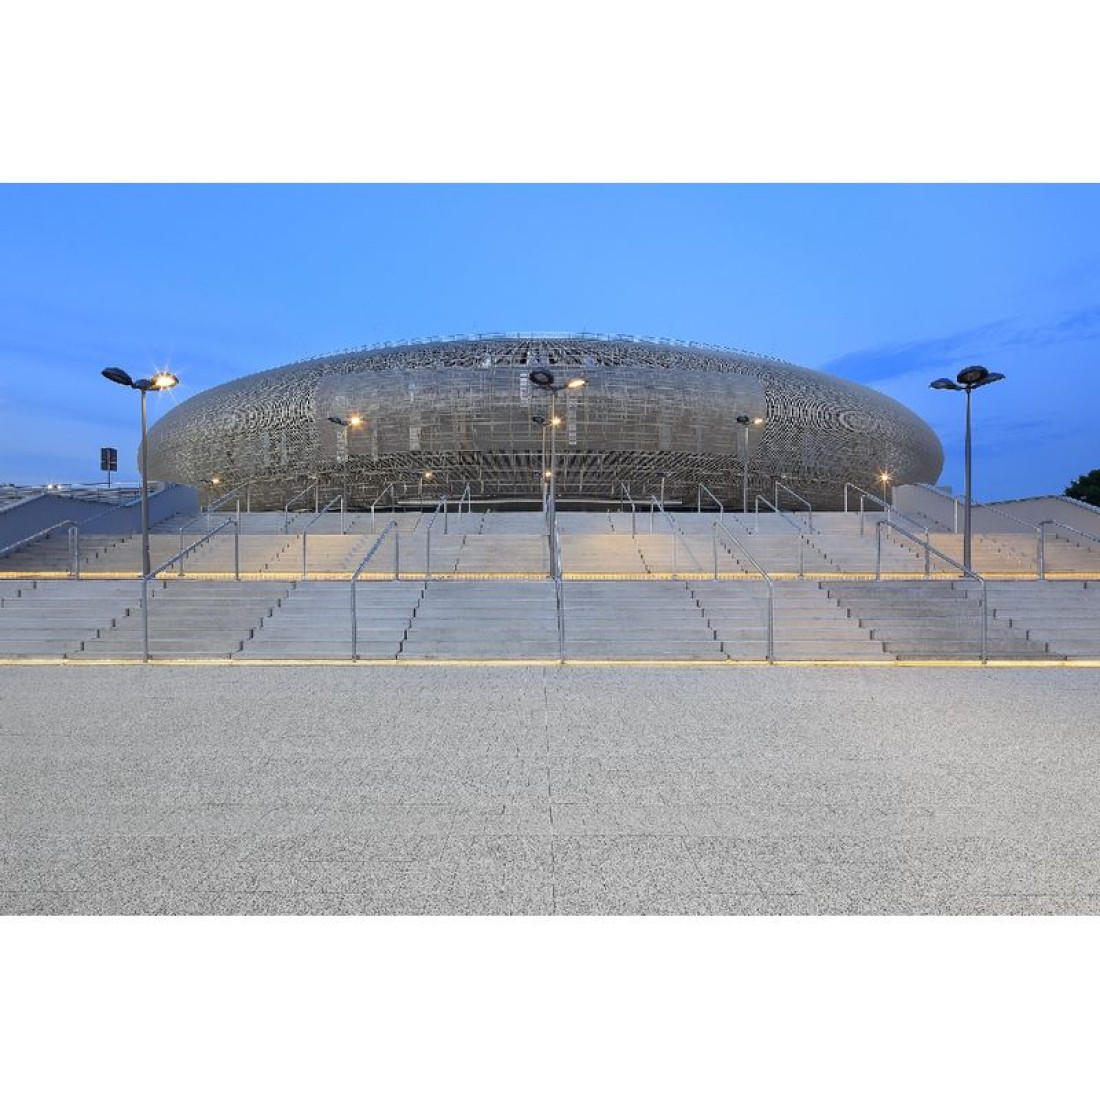 W stronę nowoczesności - brukowana nawierzchnia Polbruk wokół hali Arena Kraków